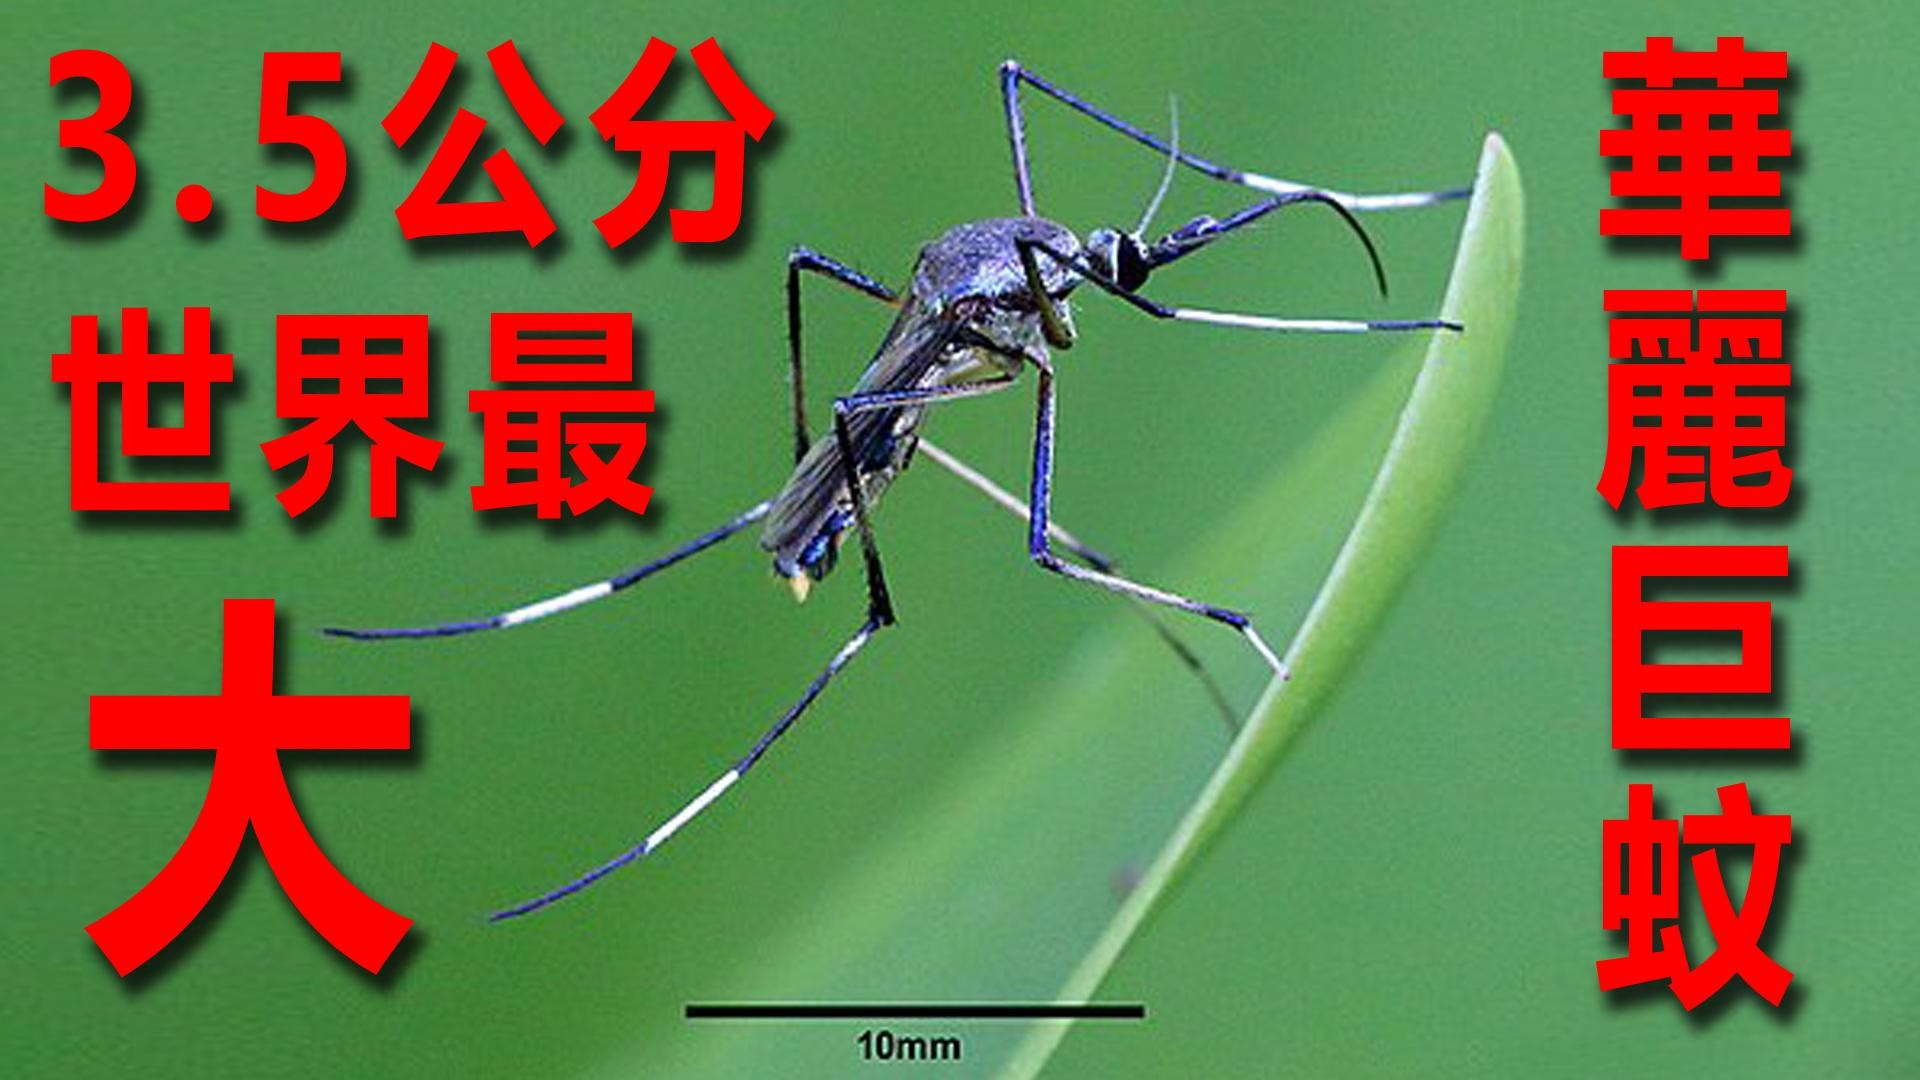 巨大な蚊、ギネス認定 四川で発見 写真4枚 国際ニュース：AFPBB News